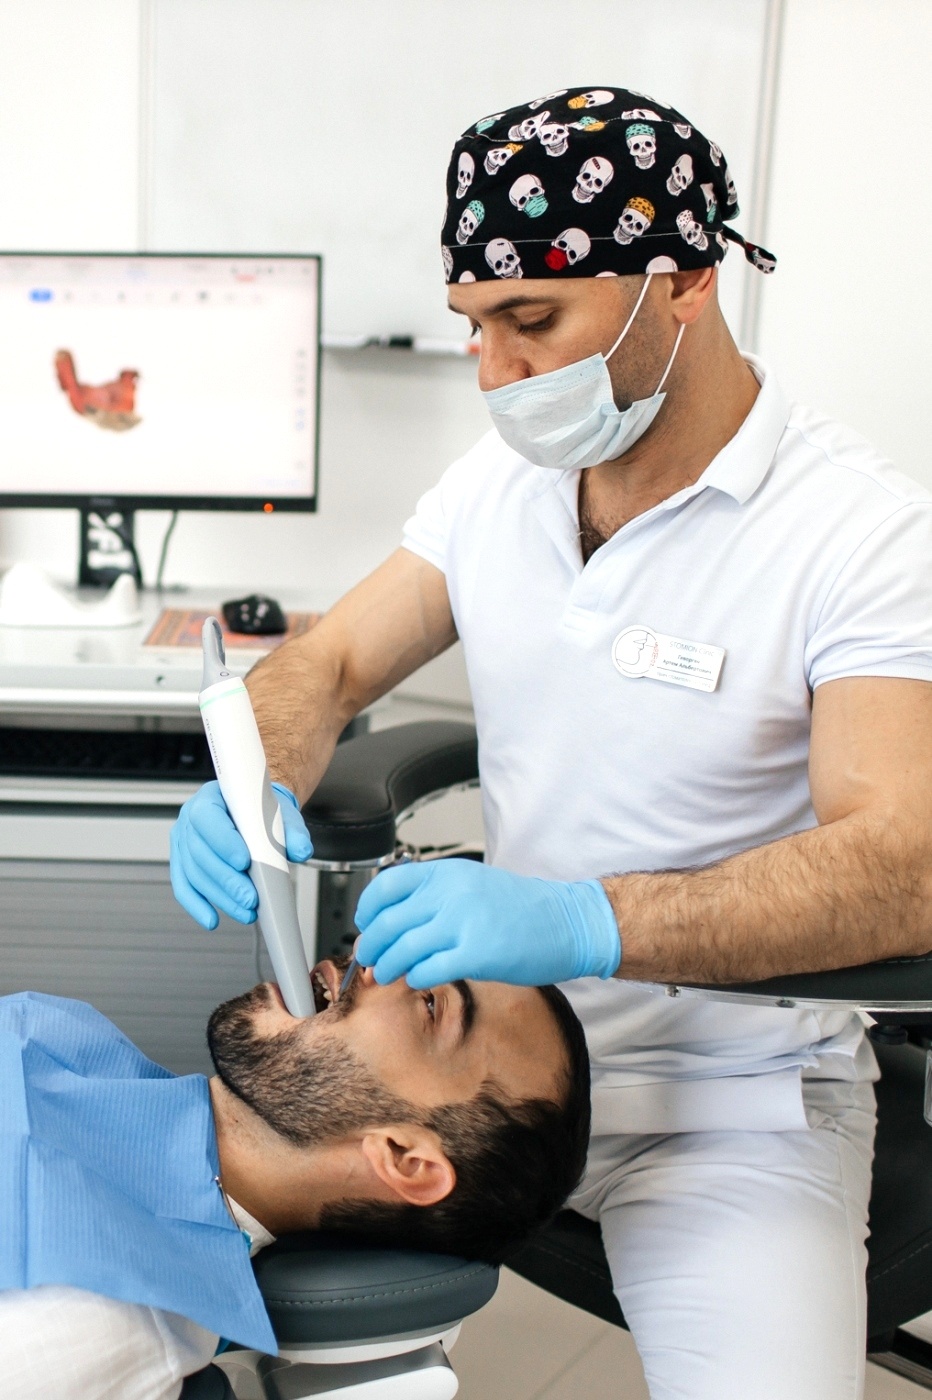 Стоматолог ортопед сканирует зубы пациента для начала проведения протезирования зубов по цифровому протоколу